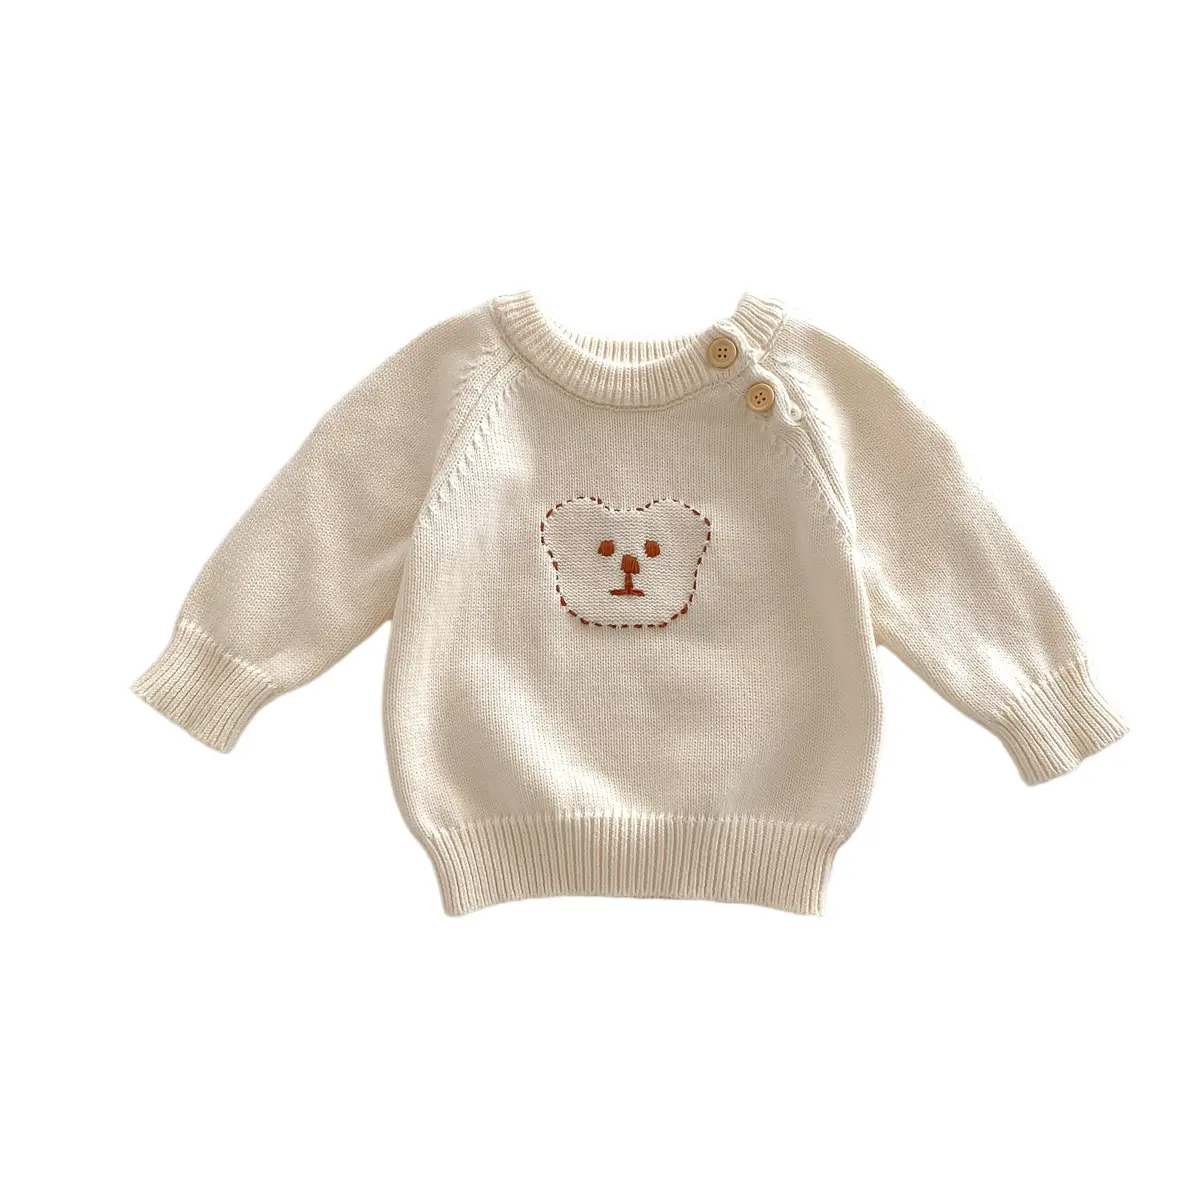 गर्म बिक्री अनुकूलित शैली शीतकालीन स्वेटर नरम और आरामदायक 100% कपास बुना स्वेटर बच्चों के लिए आकस्मिक बच्चे स्वेटर